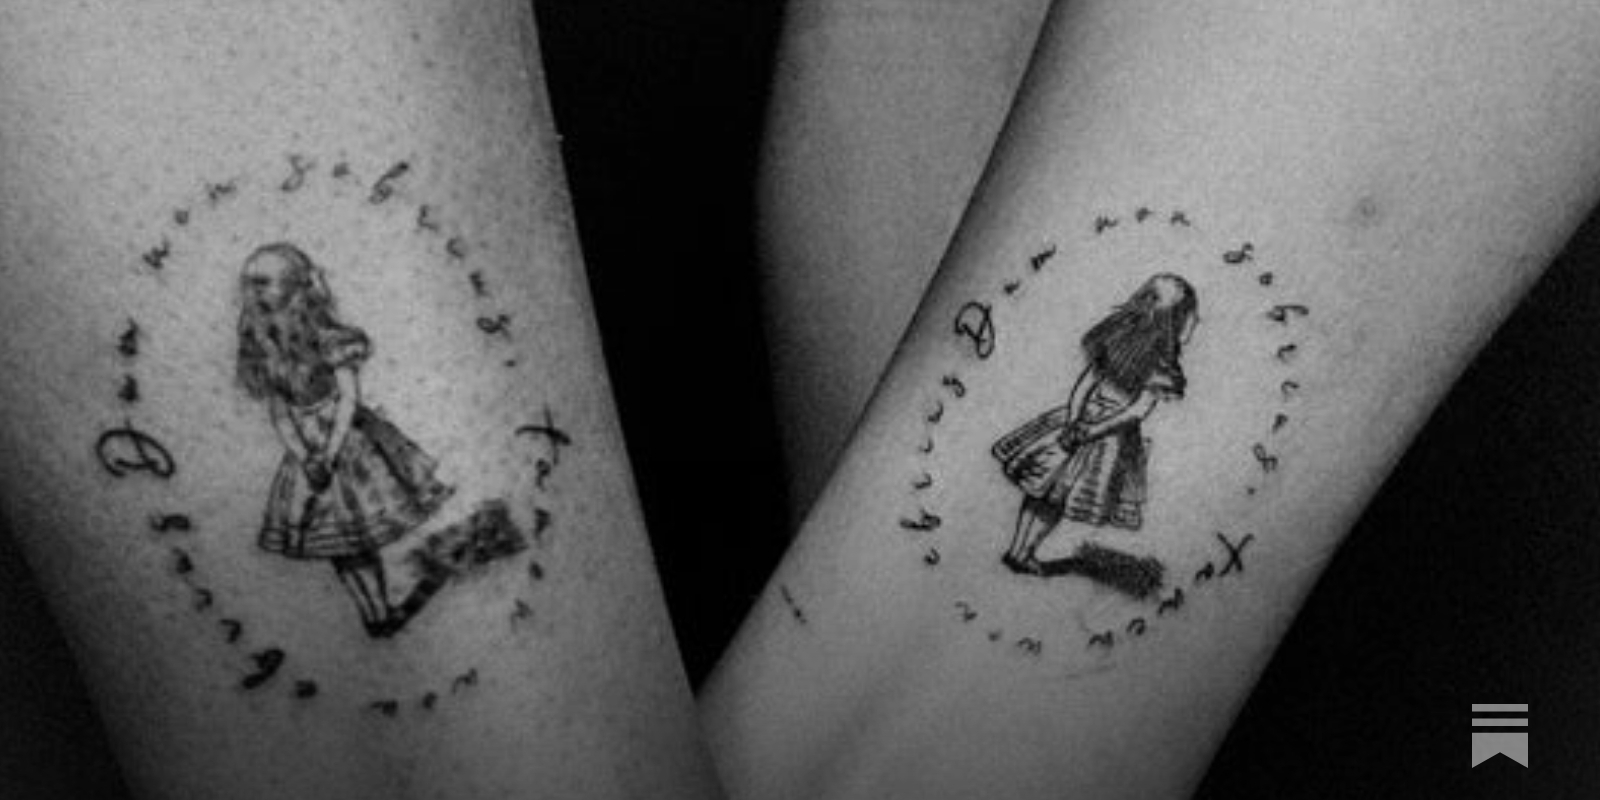 Tattoo Ideas - tattoogenda.com